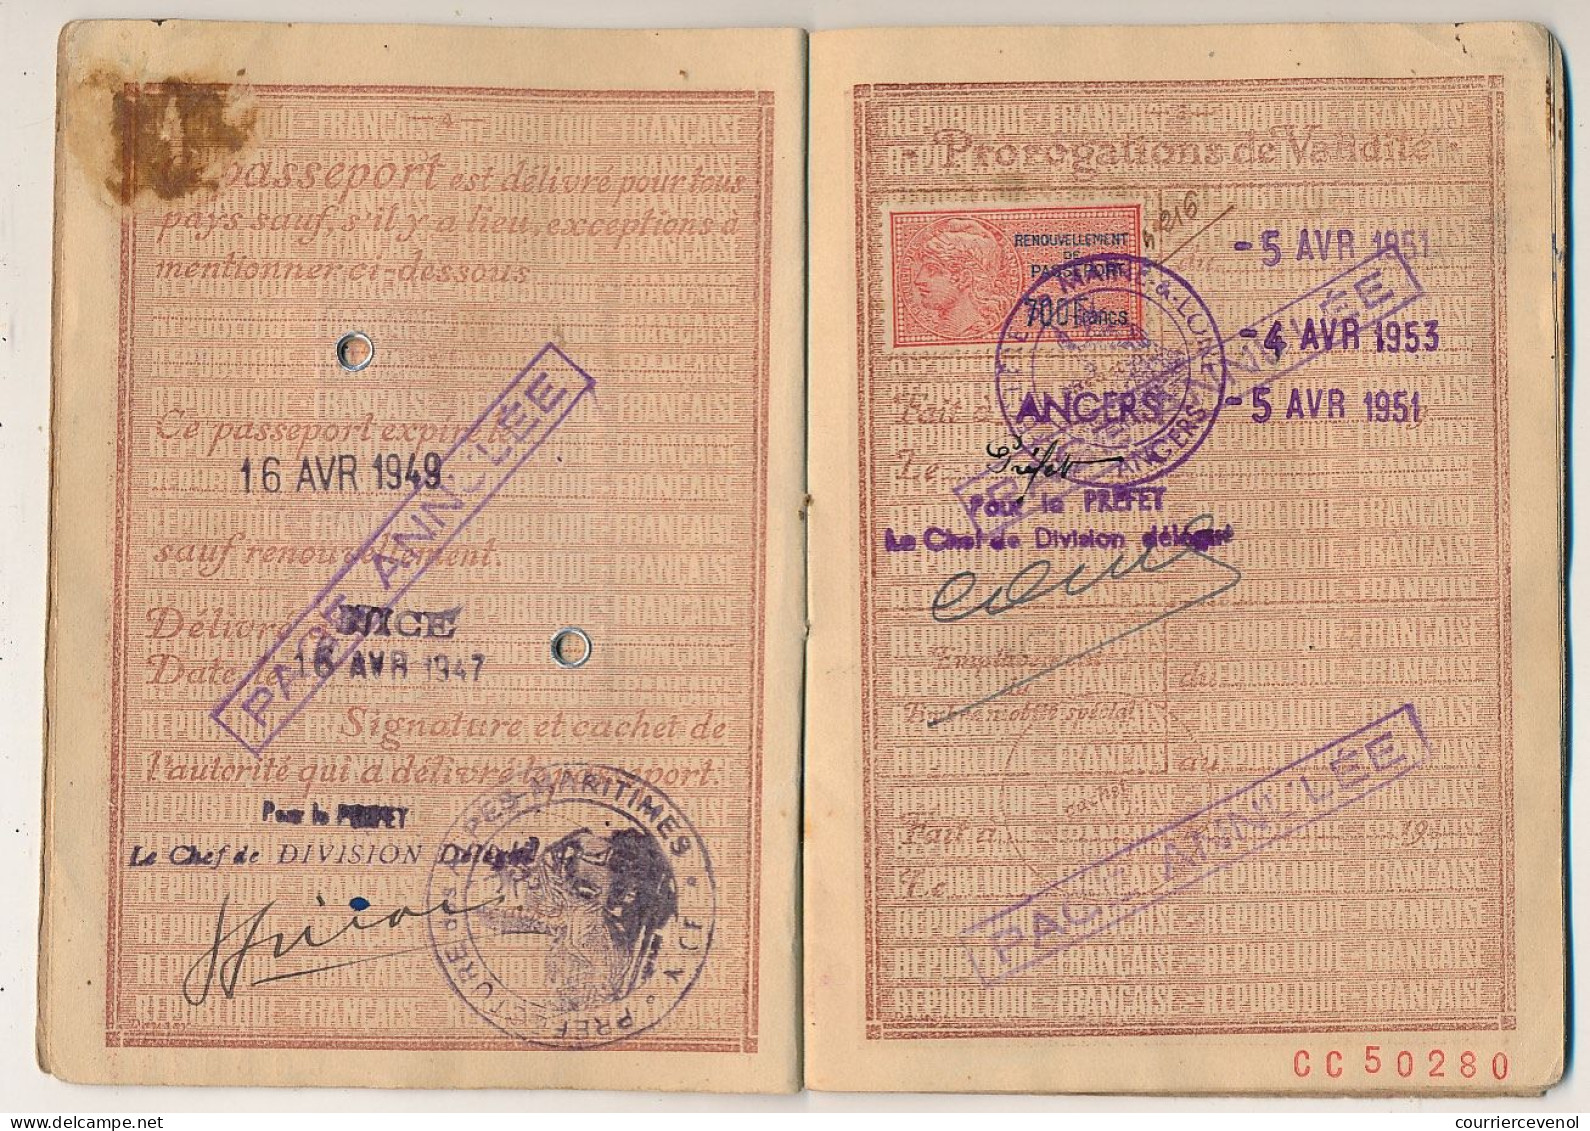 FRANCE - Passeport Délivré à NICE - 1949/1951 - 60F + Complément Tarif 1946 / Fiscal Renouvellement 700 F + Visas Divers - Covers & Documents